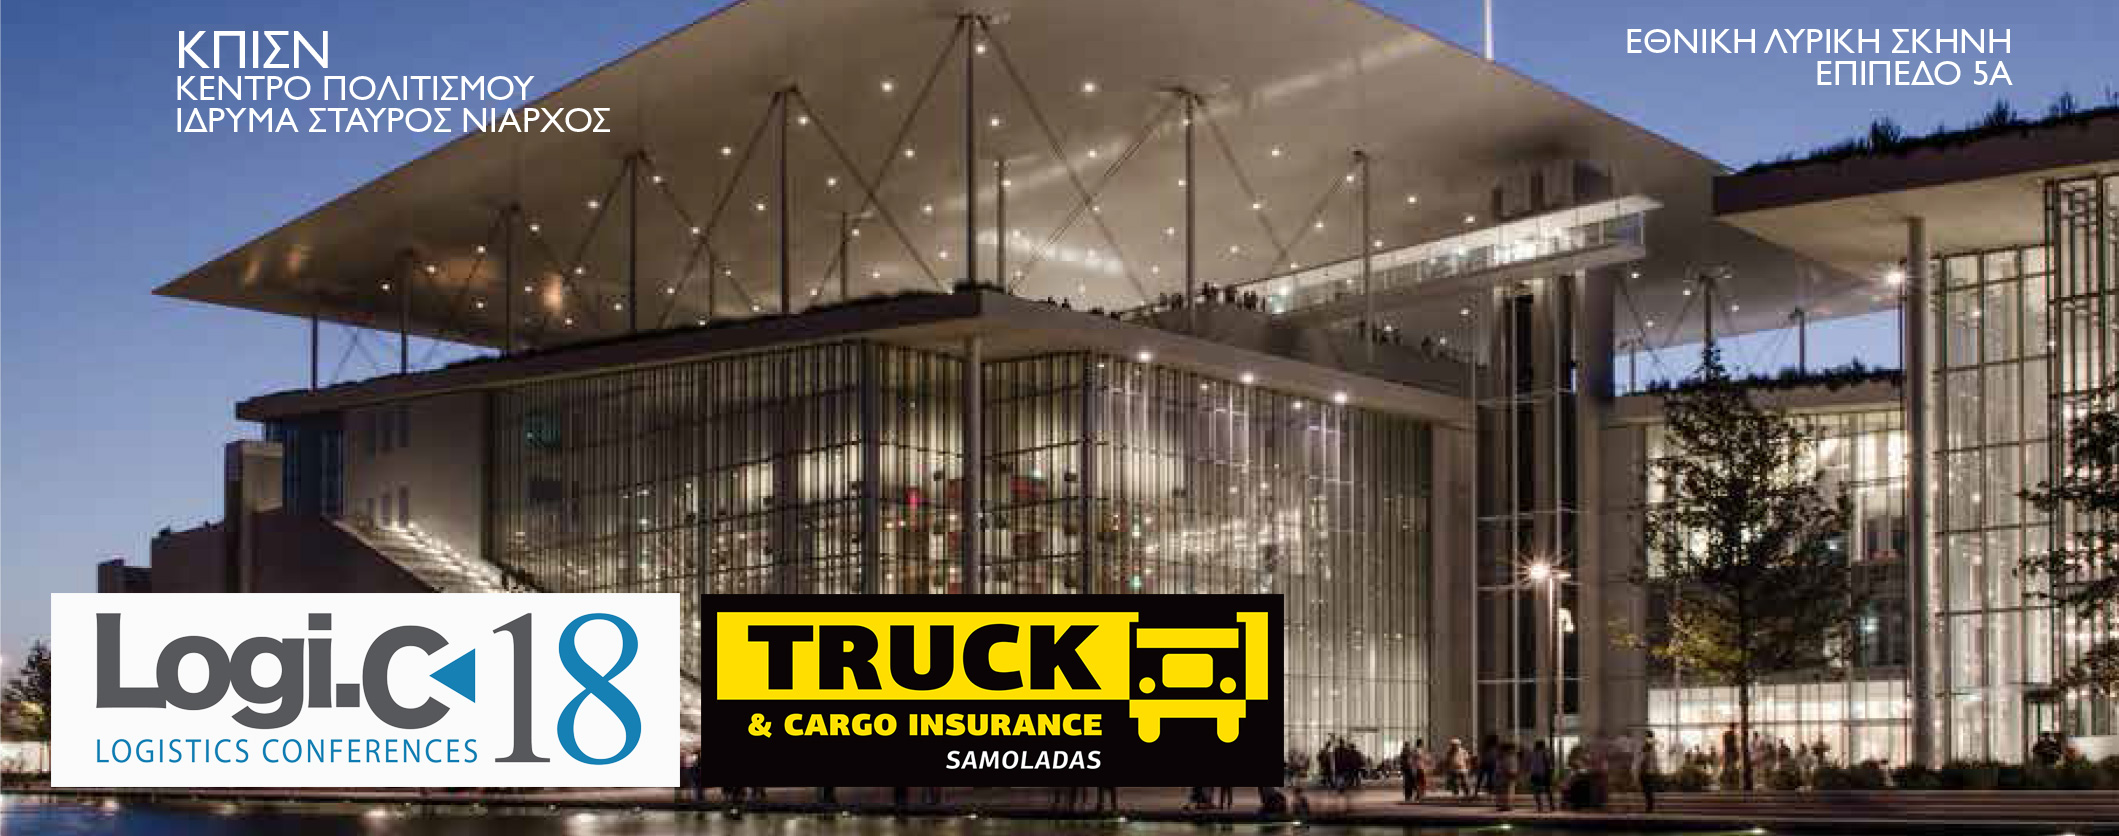 Η Truck & Cargo Insurance στην Logi.c 2018